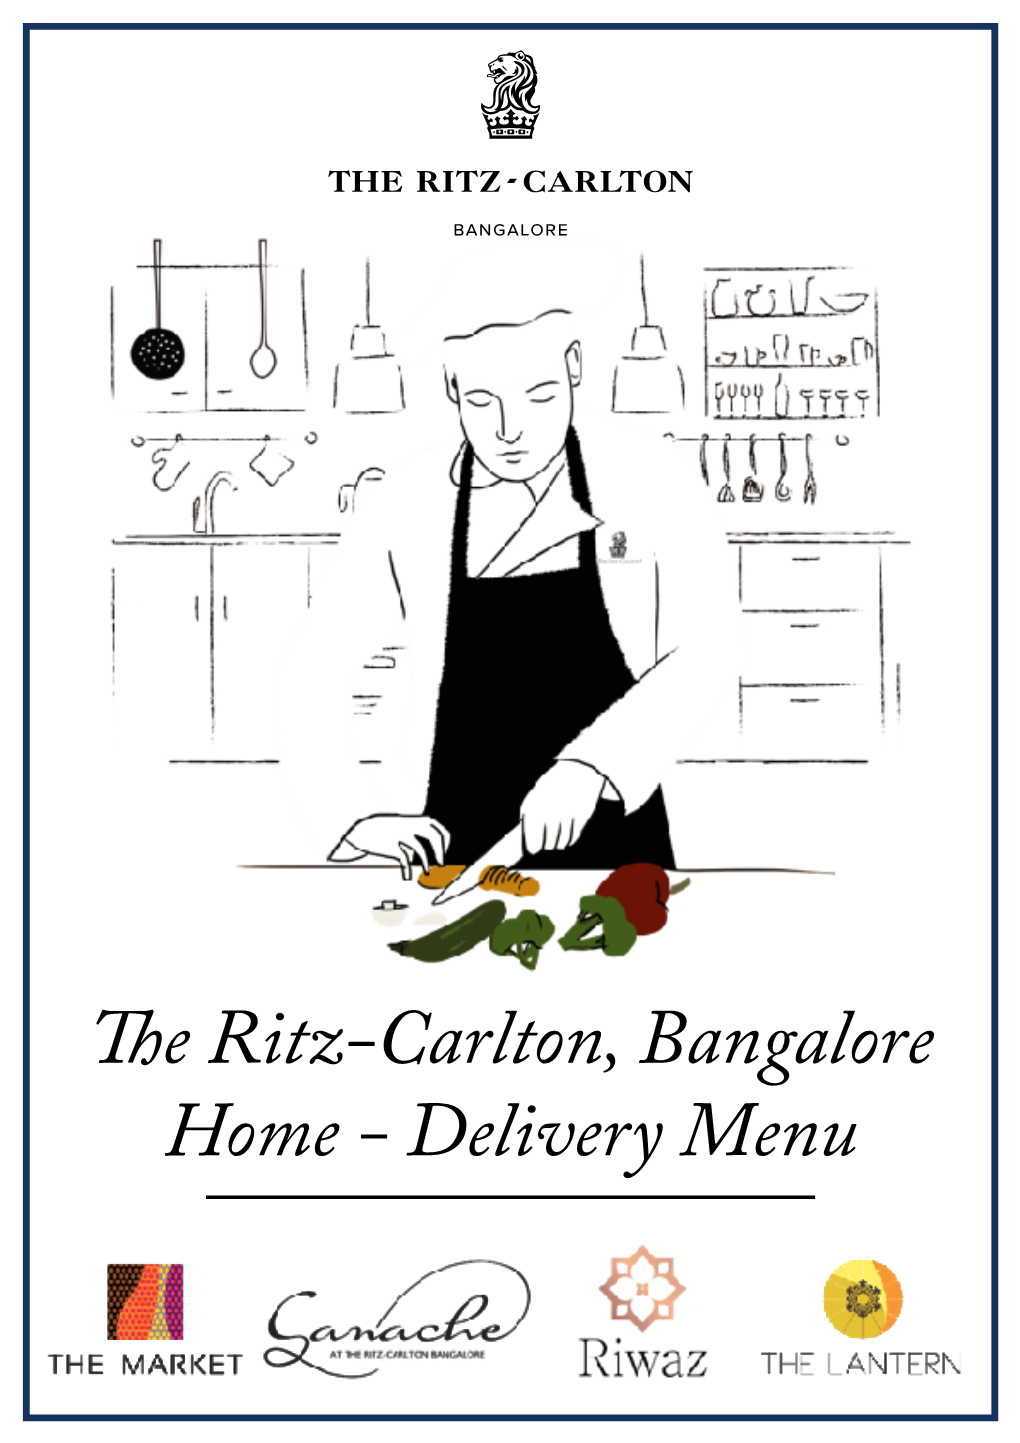 Te Ritz-Carlton, Bangalore Home